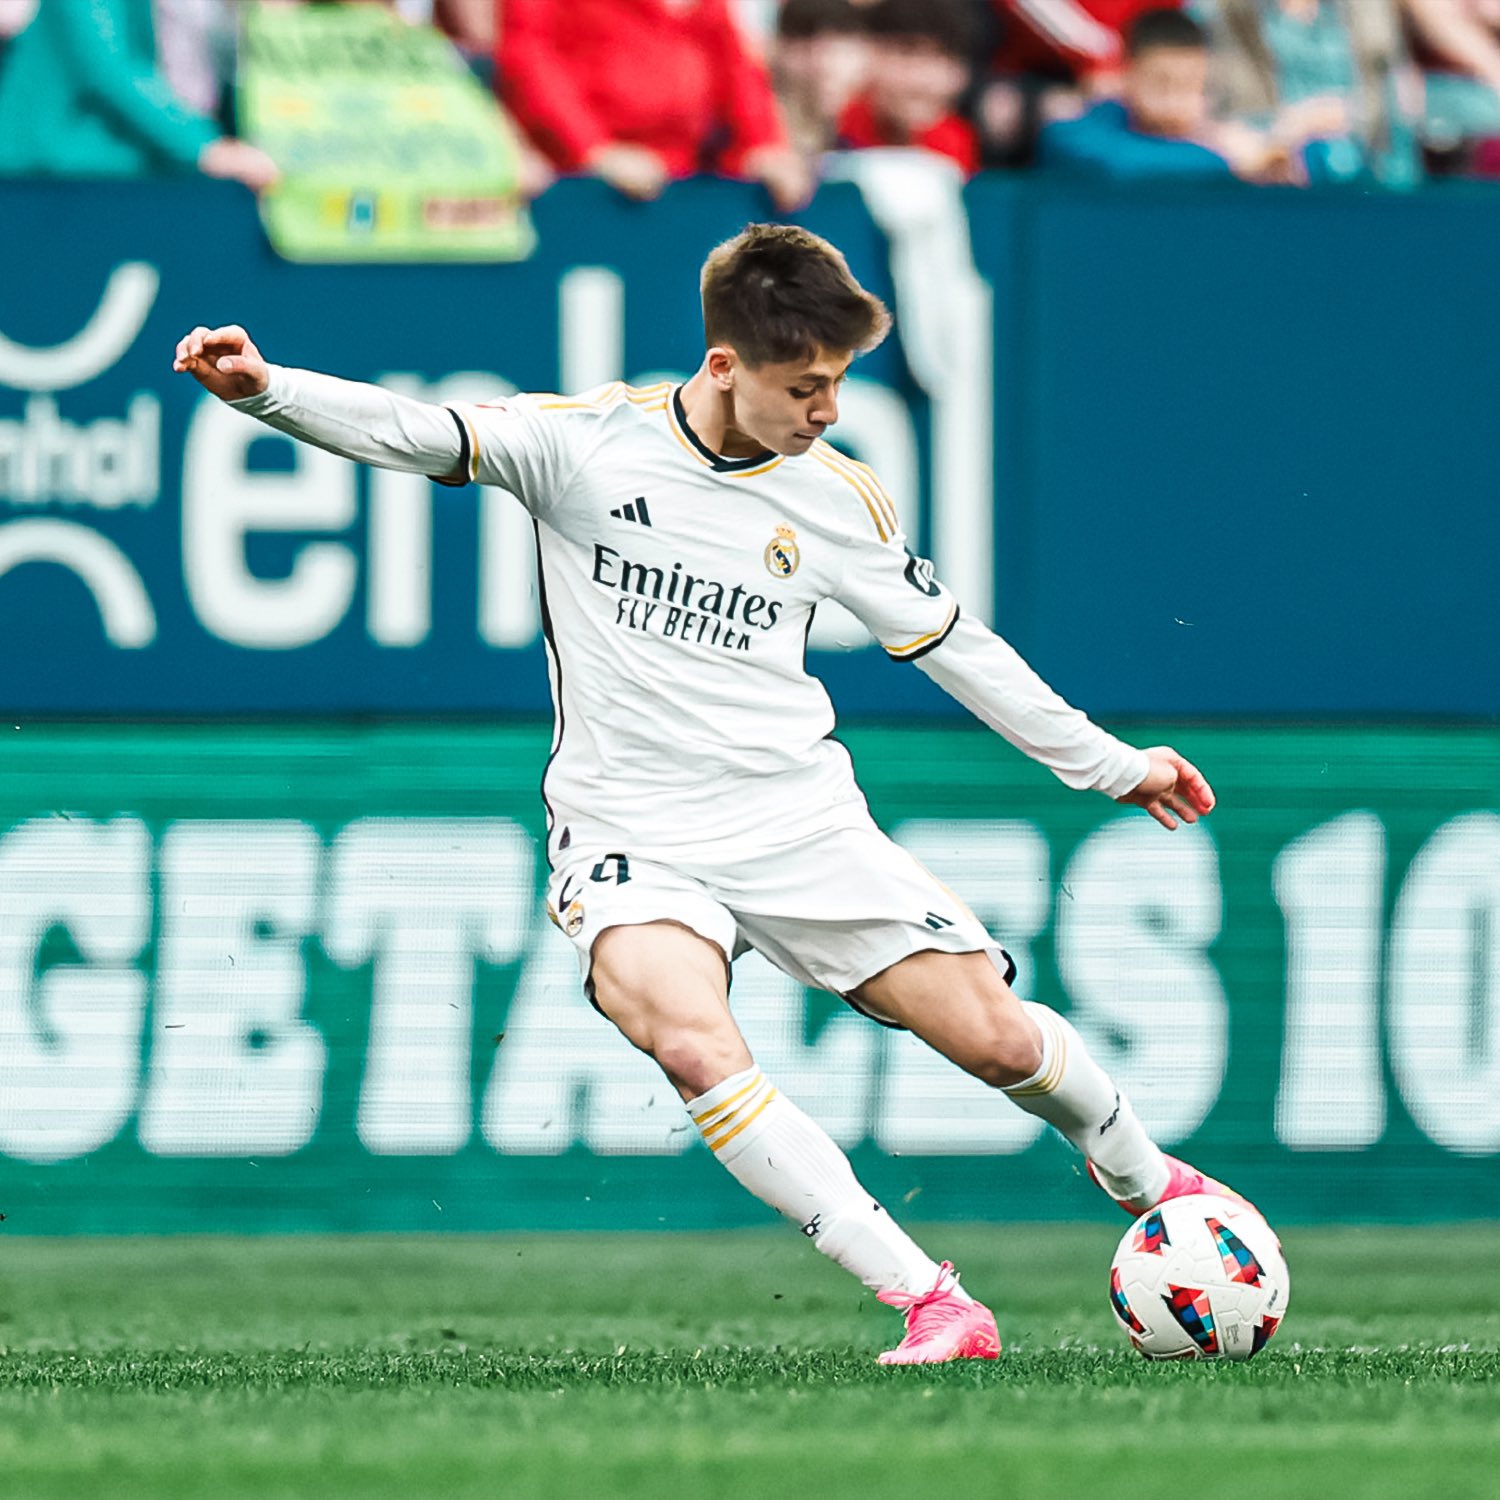 Güler será un jugador muy importante para el Real Madrid, afirma Ancelotti